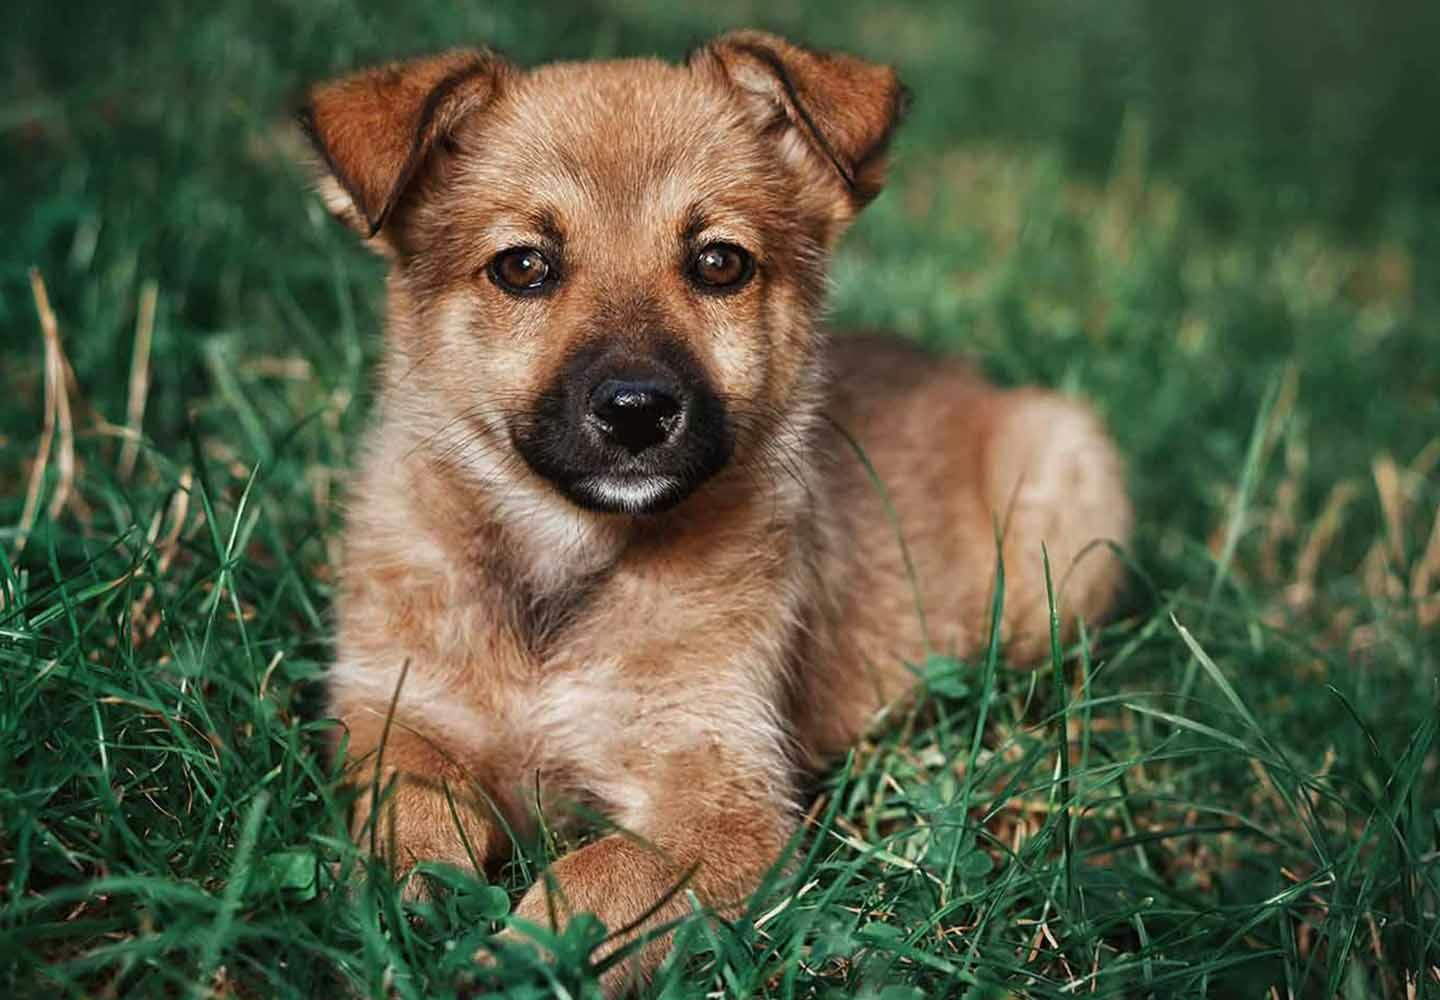 【獣医師監修】ミックス犬の特徴とは？雑種犬との違いや種類、飼い方のコツなどを解説